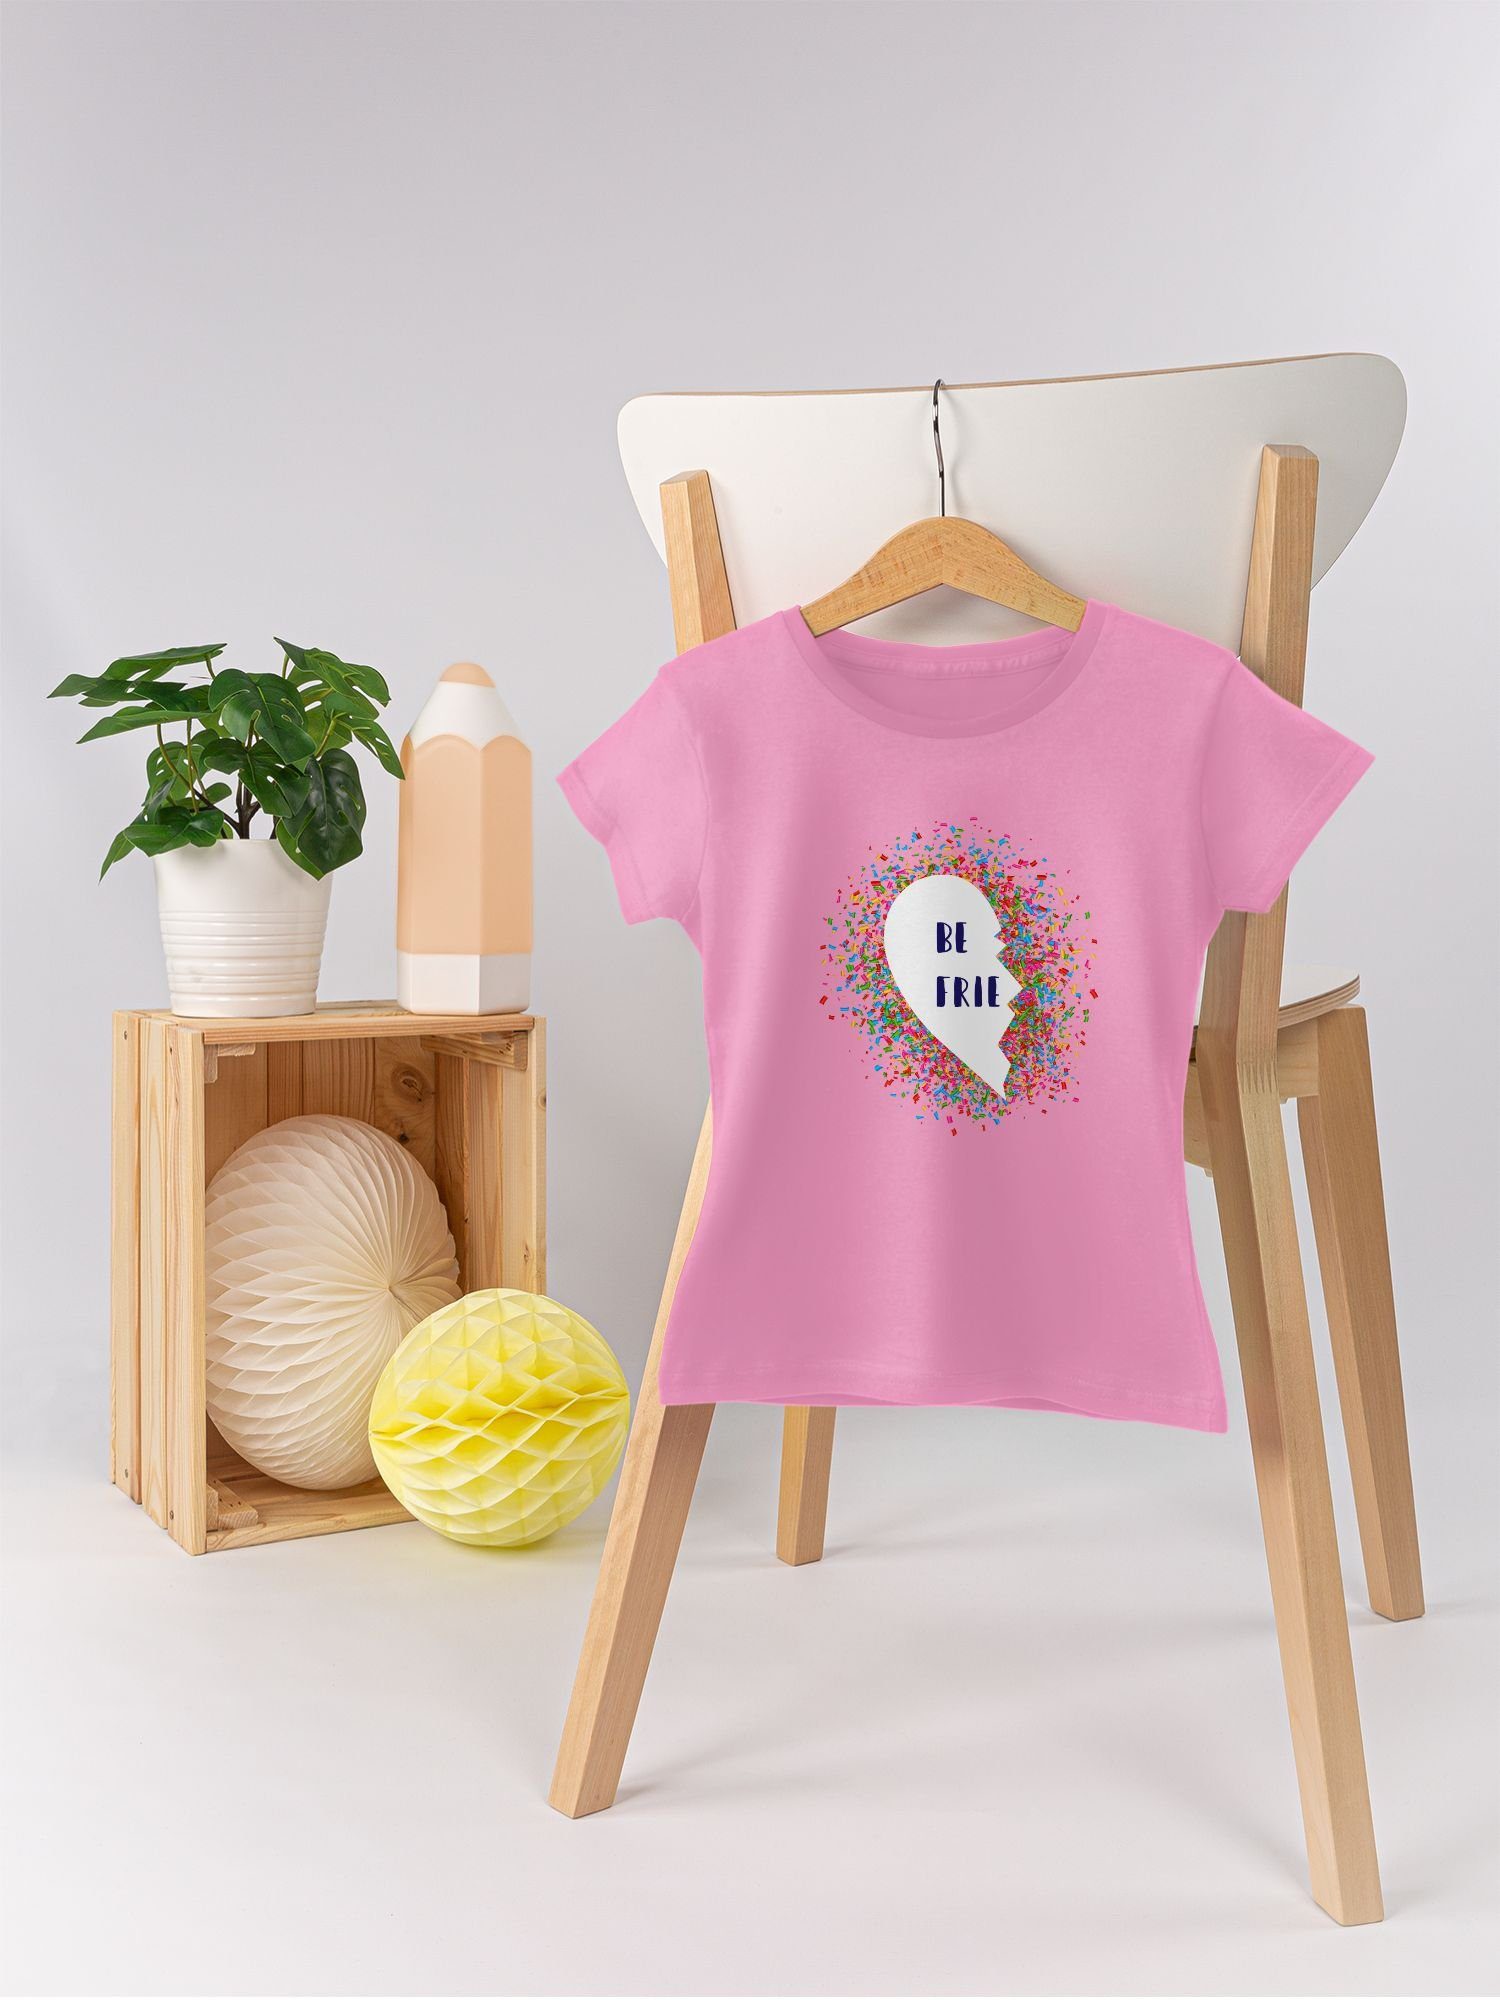 Shirtracer T-Shirt best friends Konfetti Kinder 1 Rosa Freunde Partnerlook Teil 3